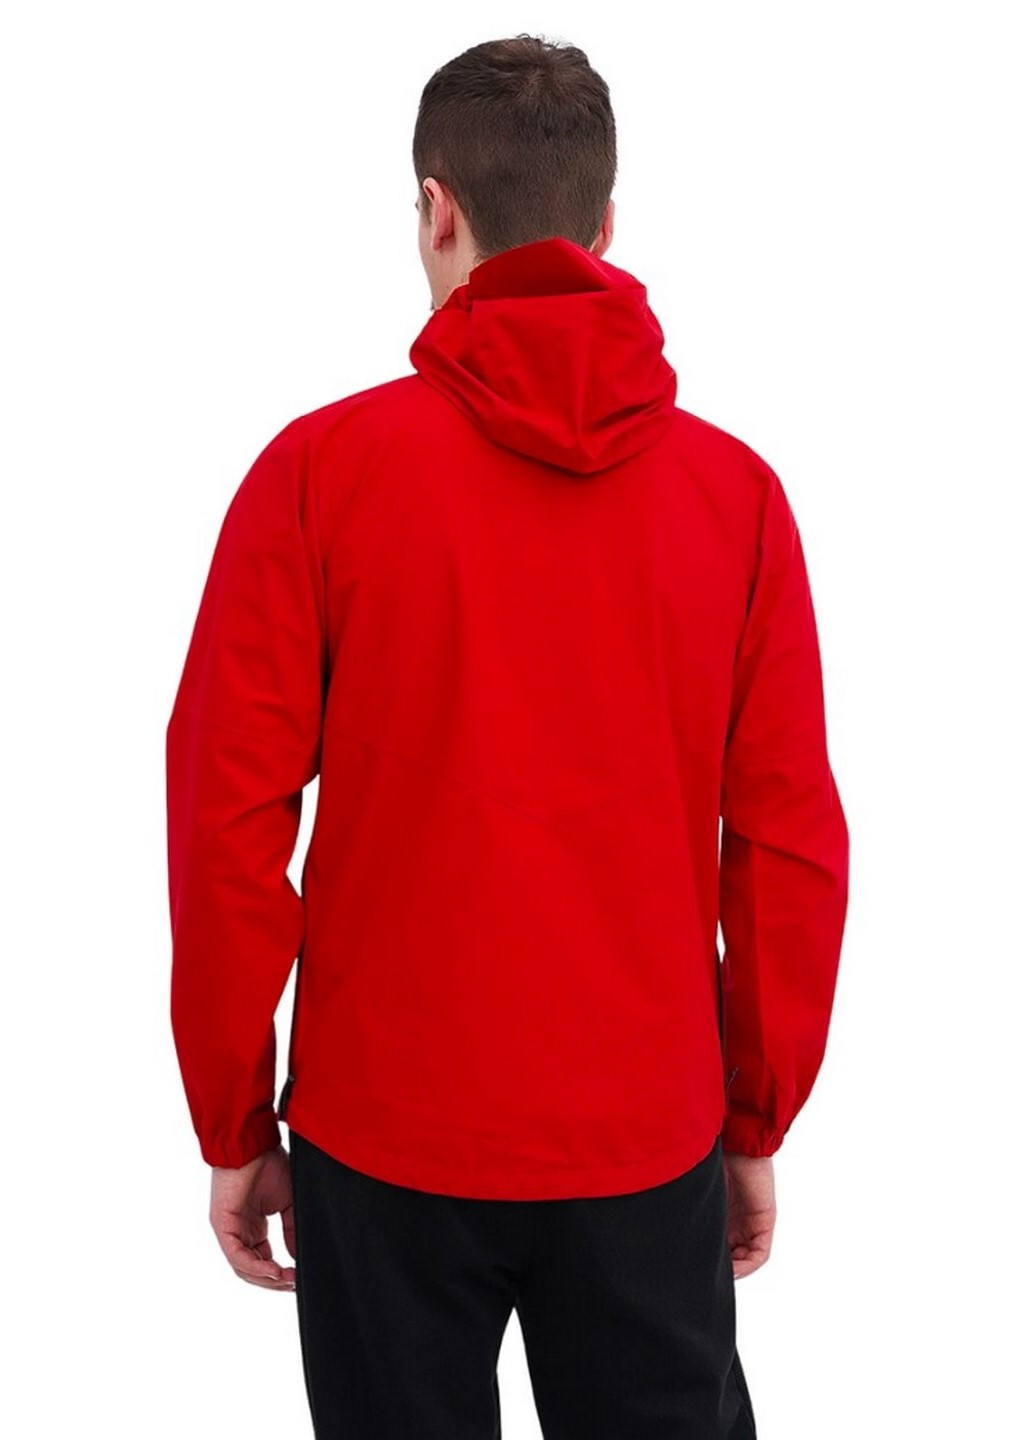 Красная демисезонная куртка мужская 268080 красный Outdoor Research